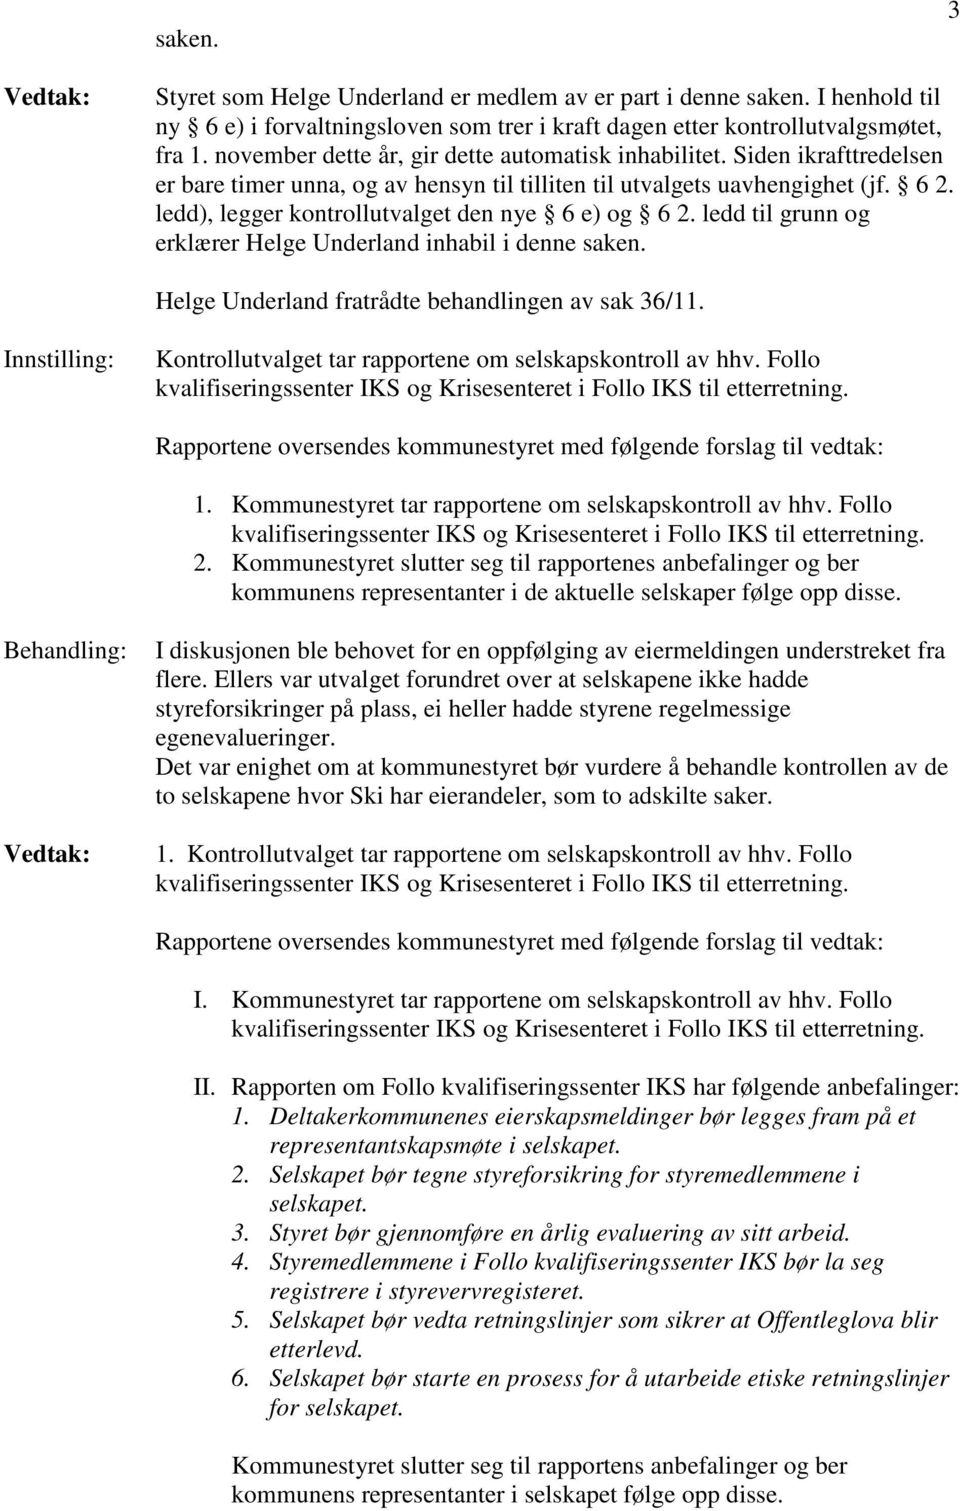 ledd), legger kontrollutvalget den nye 6 e) og 6 2. ledd til grunn og erklærer Helge Underland inhabil i denne saken. Helge Underland fratrådte behandlingen av sak 36/11.